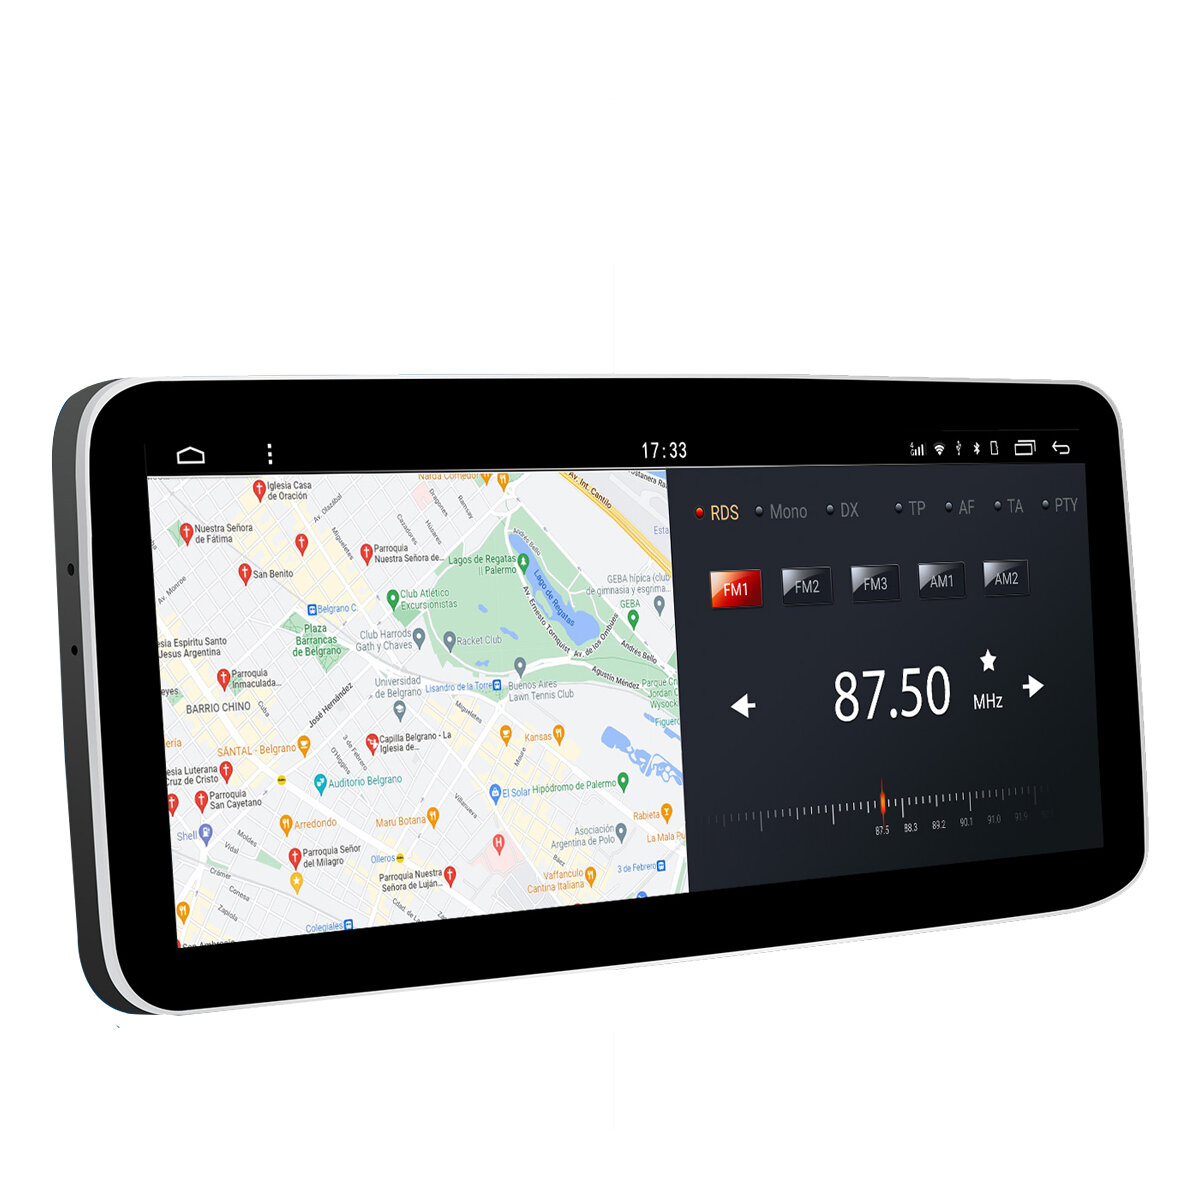 Promotion > YUEHOO YH-D071 Autoradio stéréo pour voiture Android 12.0 2Din  12,3 pouces avec caméra à 360°, lecteur MP5, écran IPS 2.5D, processeur  octa-core, GPS DSP WIFI BT5.0 - 4g 64g 